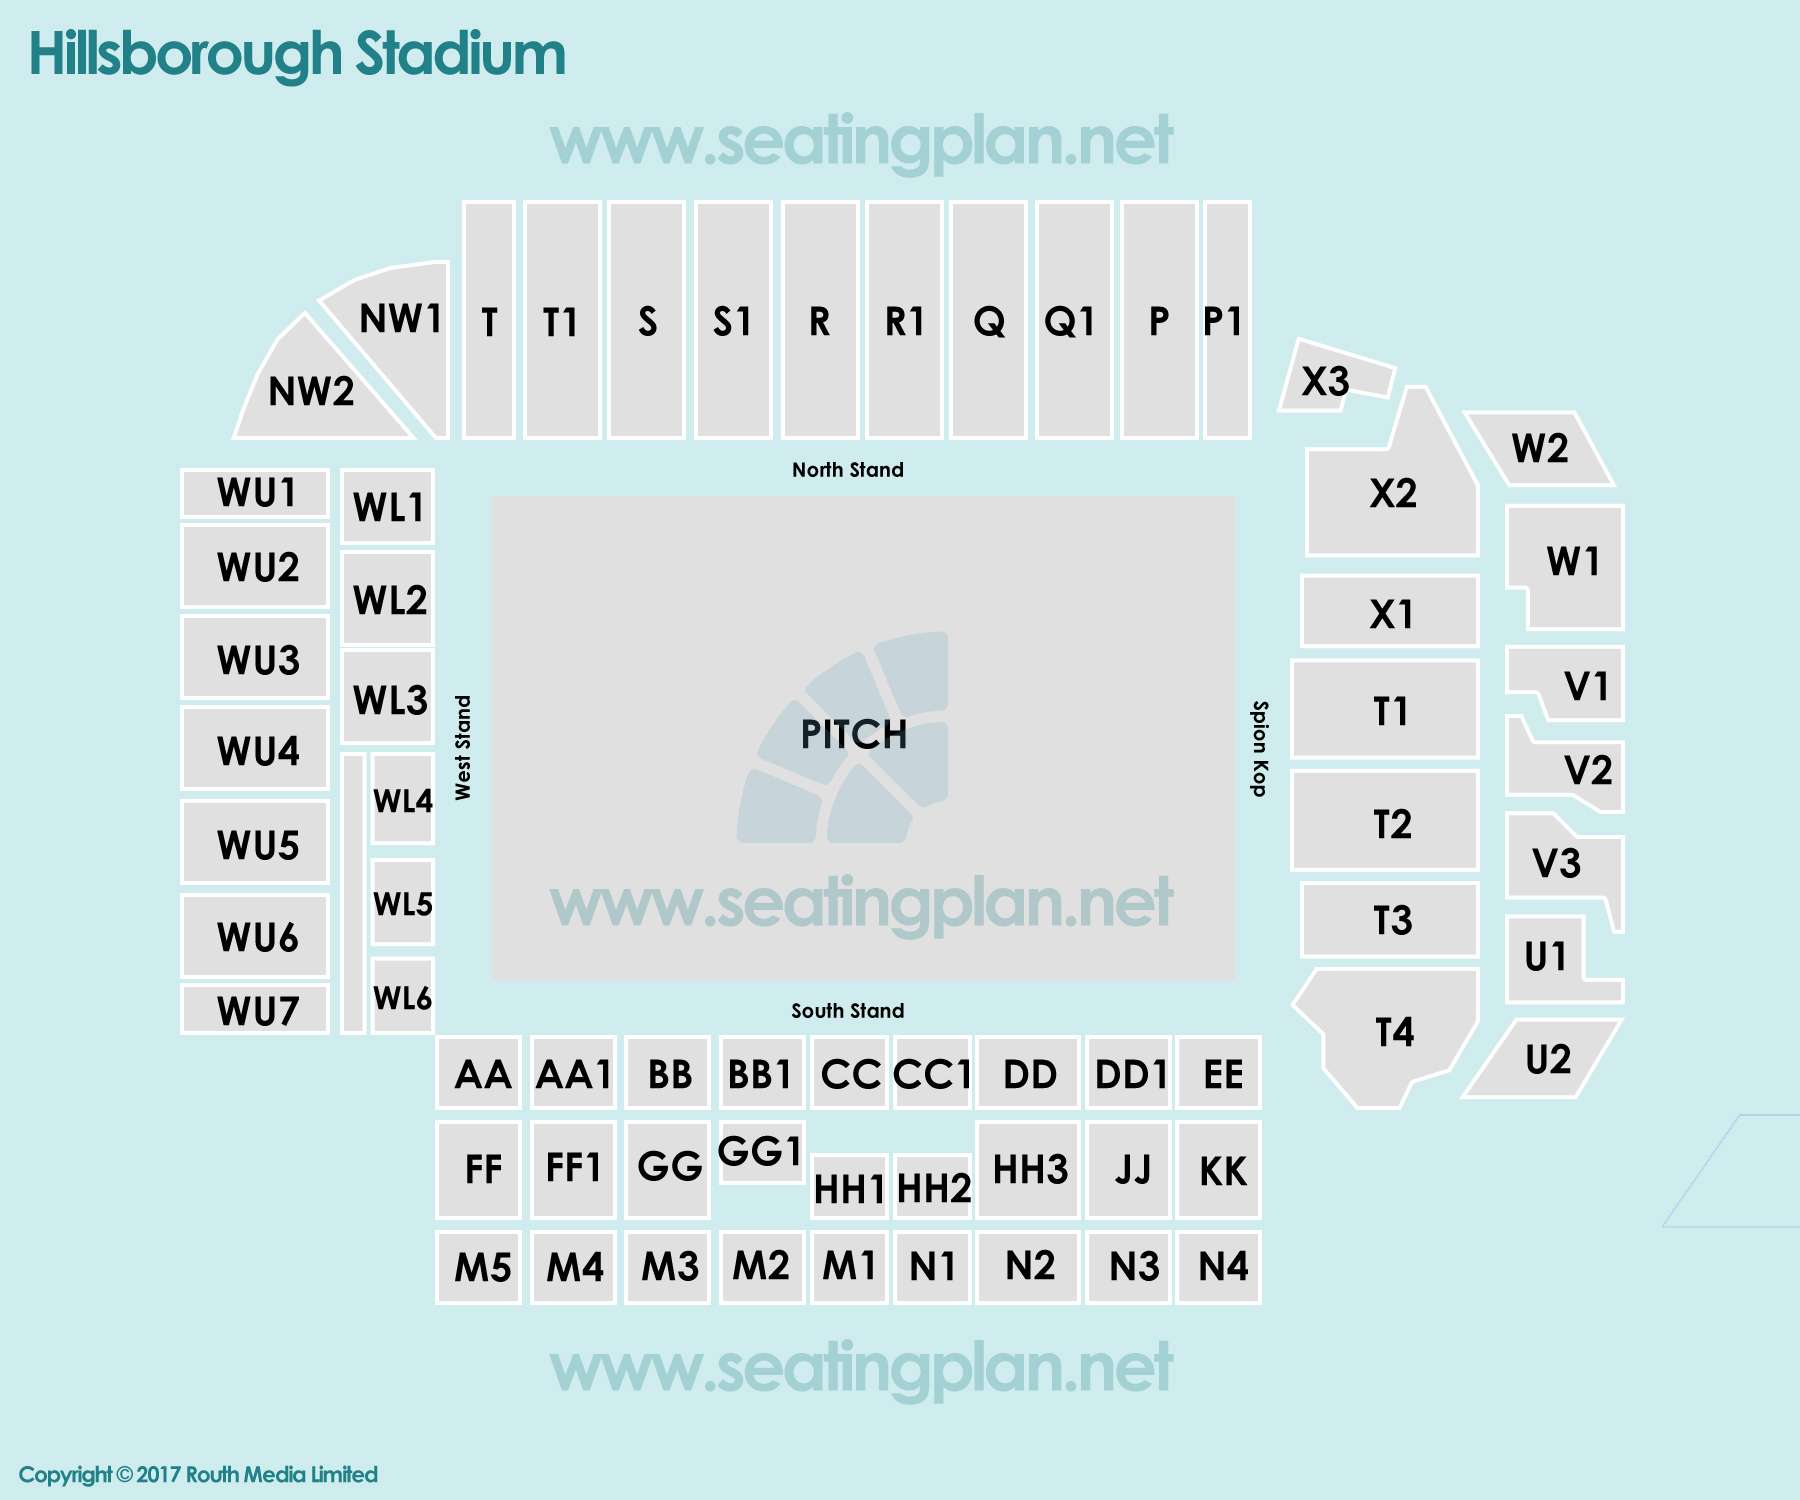  Seating Plan at Hillsborough Stadium